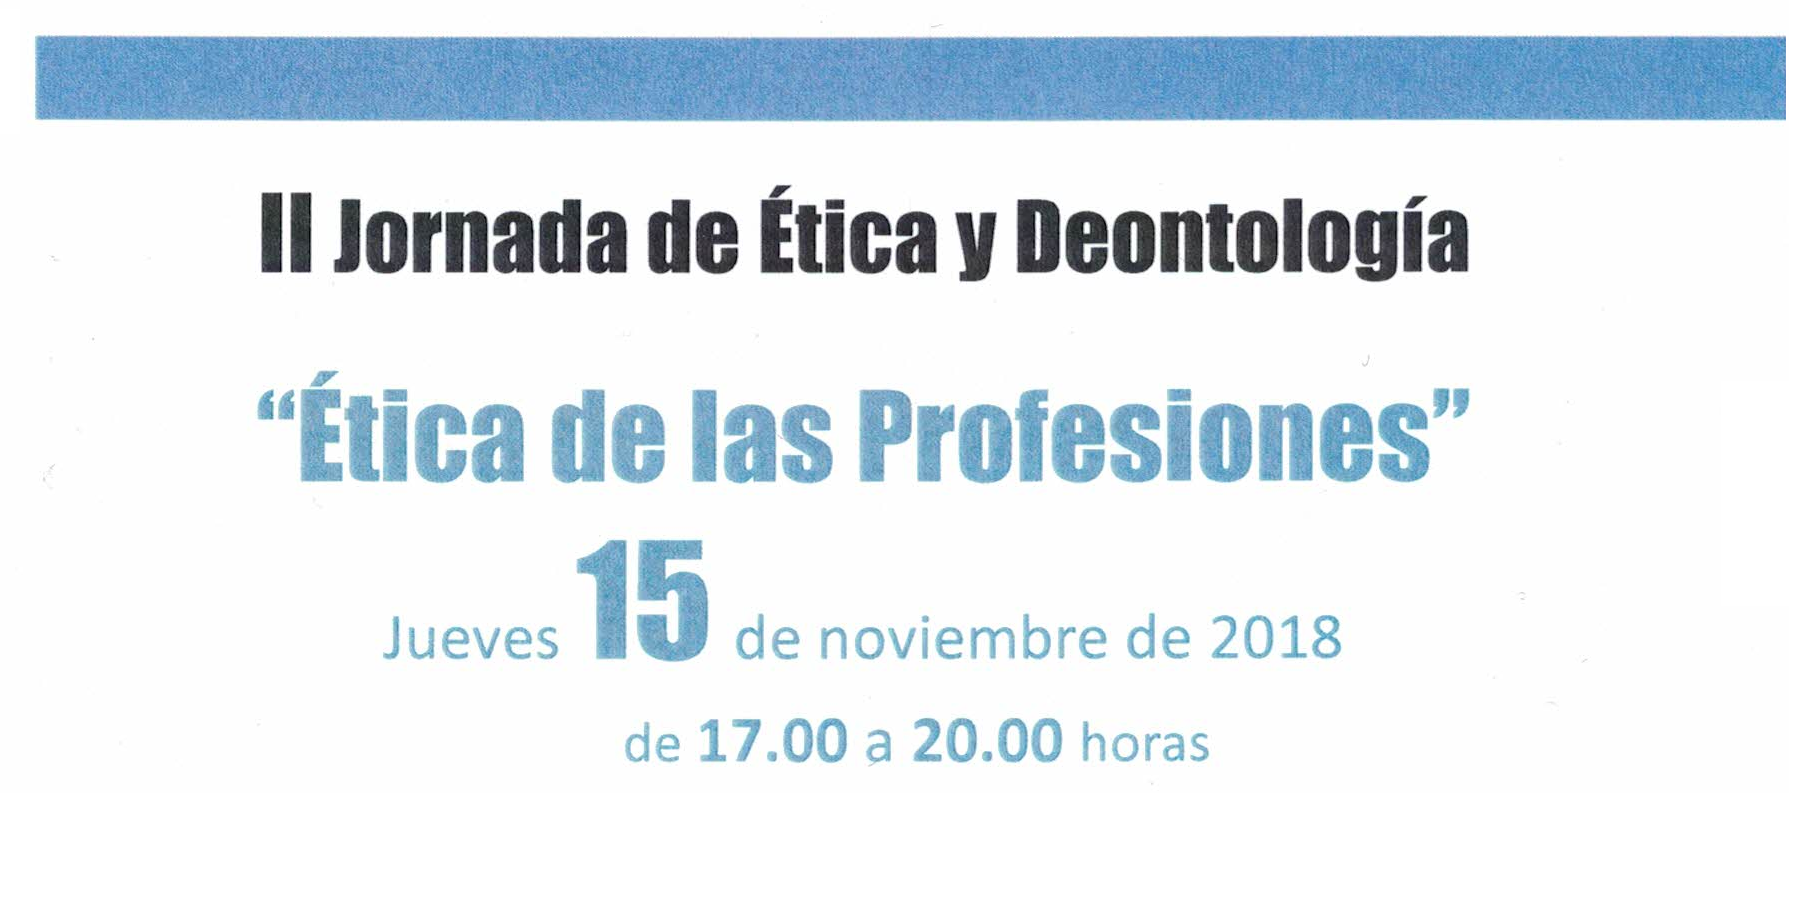 II Jornadade Ética y Deontología «Ética de las Profesiones»